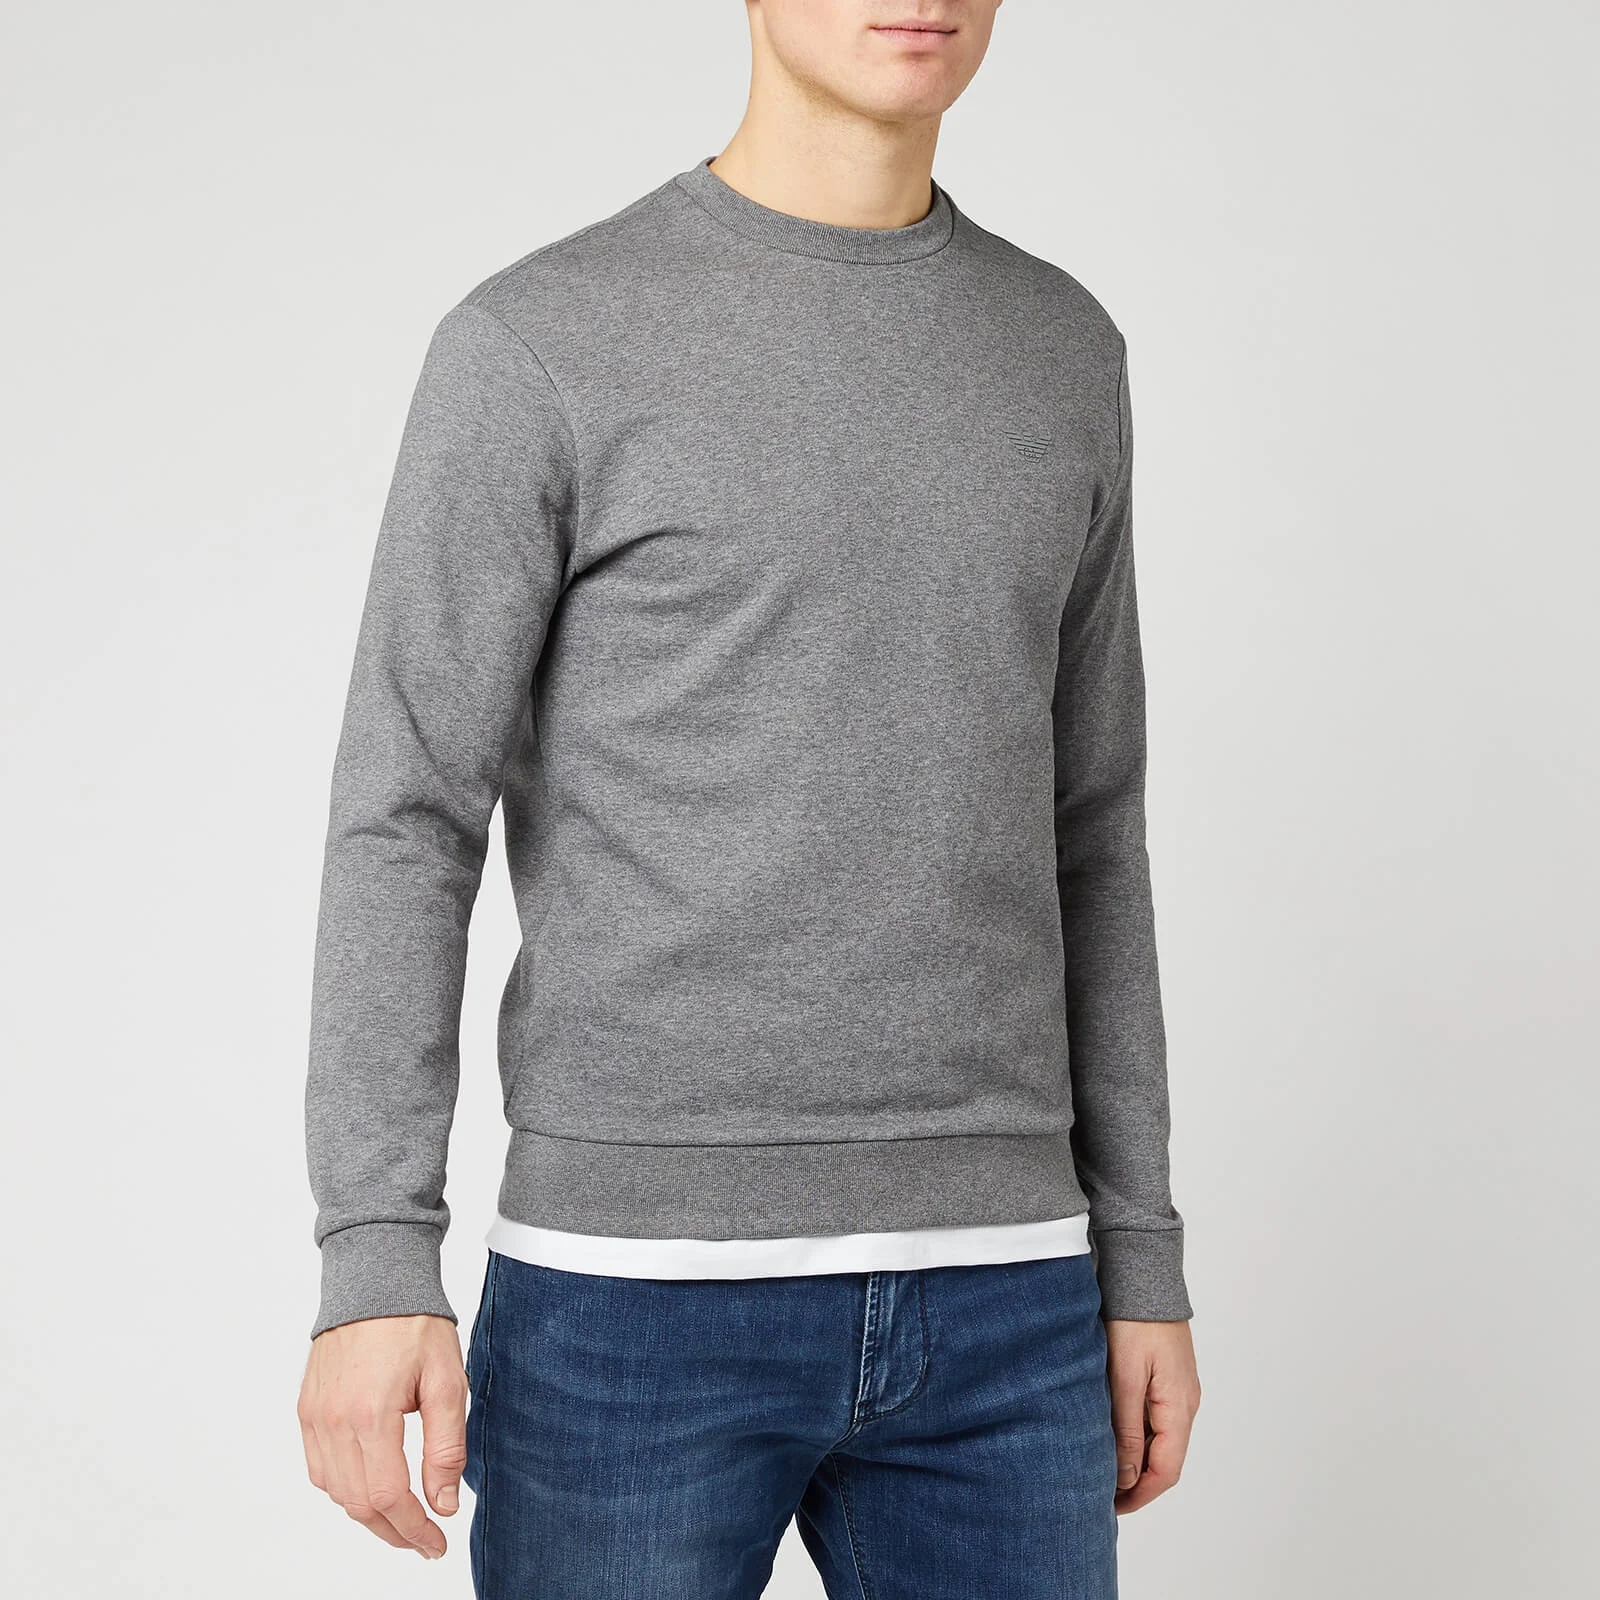 Emporio Armani Men's Sweatshirt - Grey Image 1